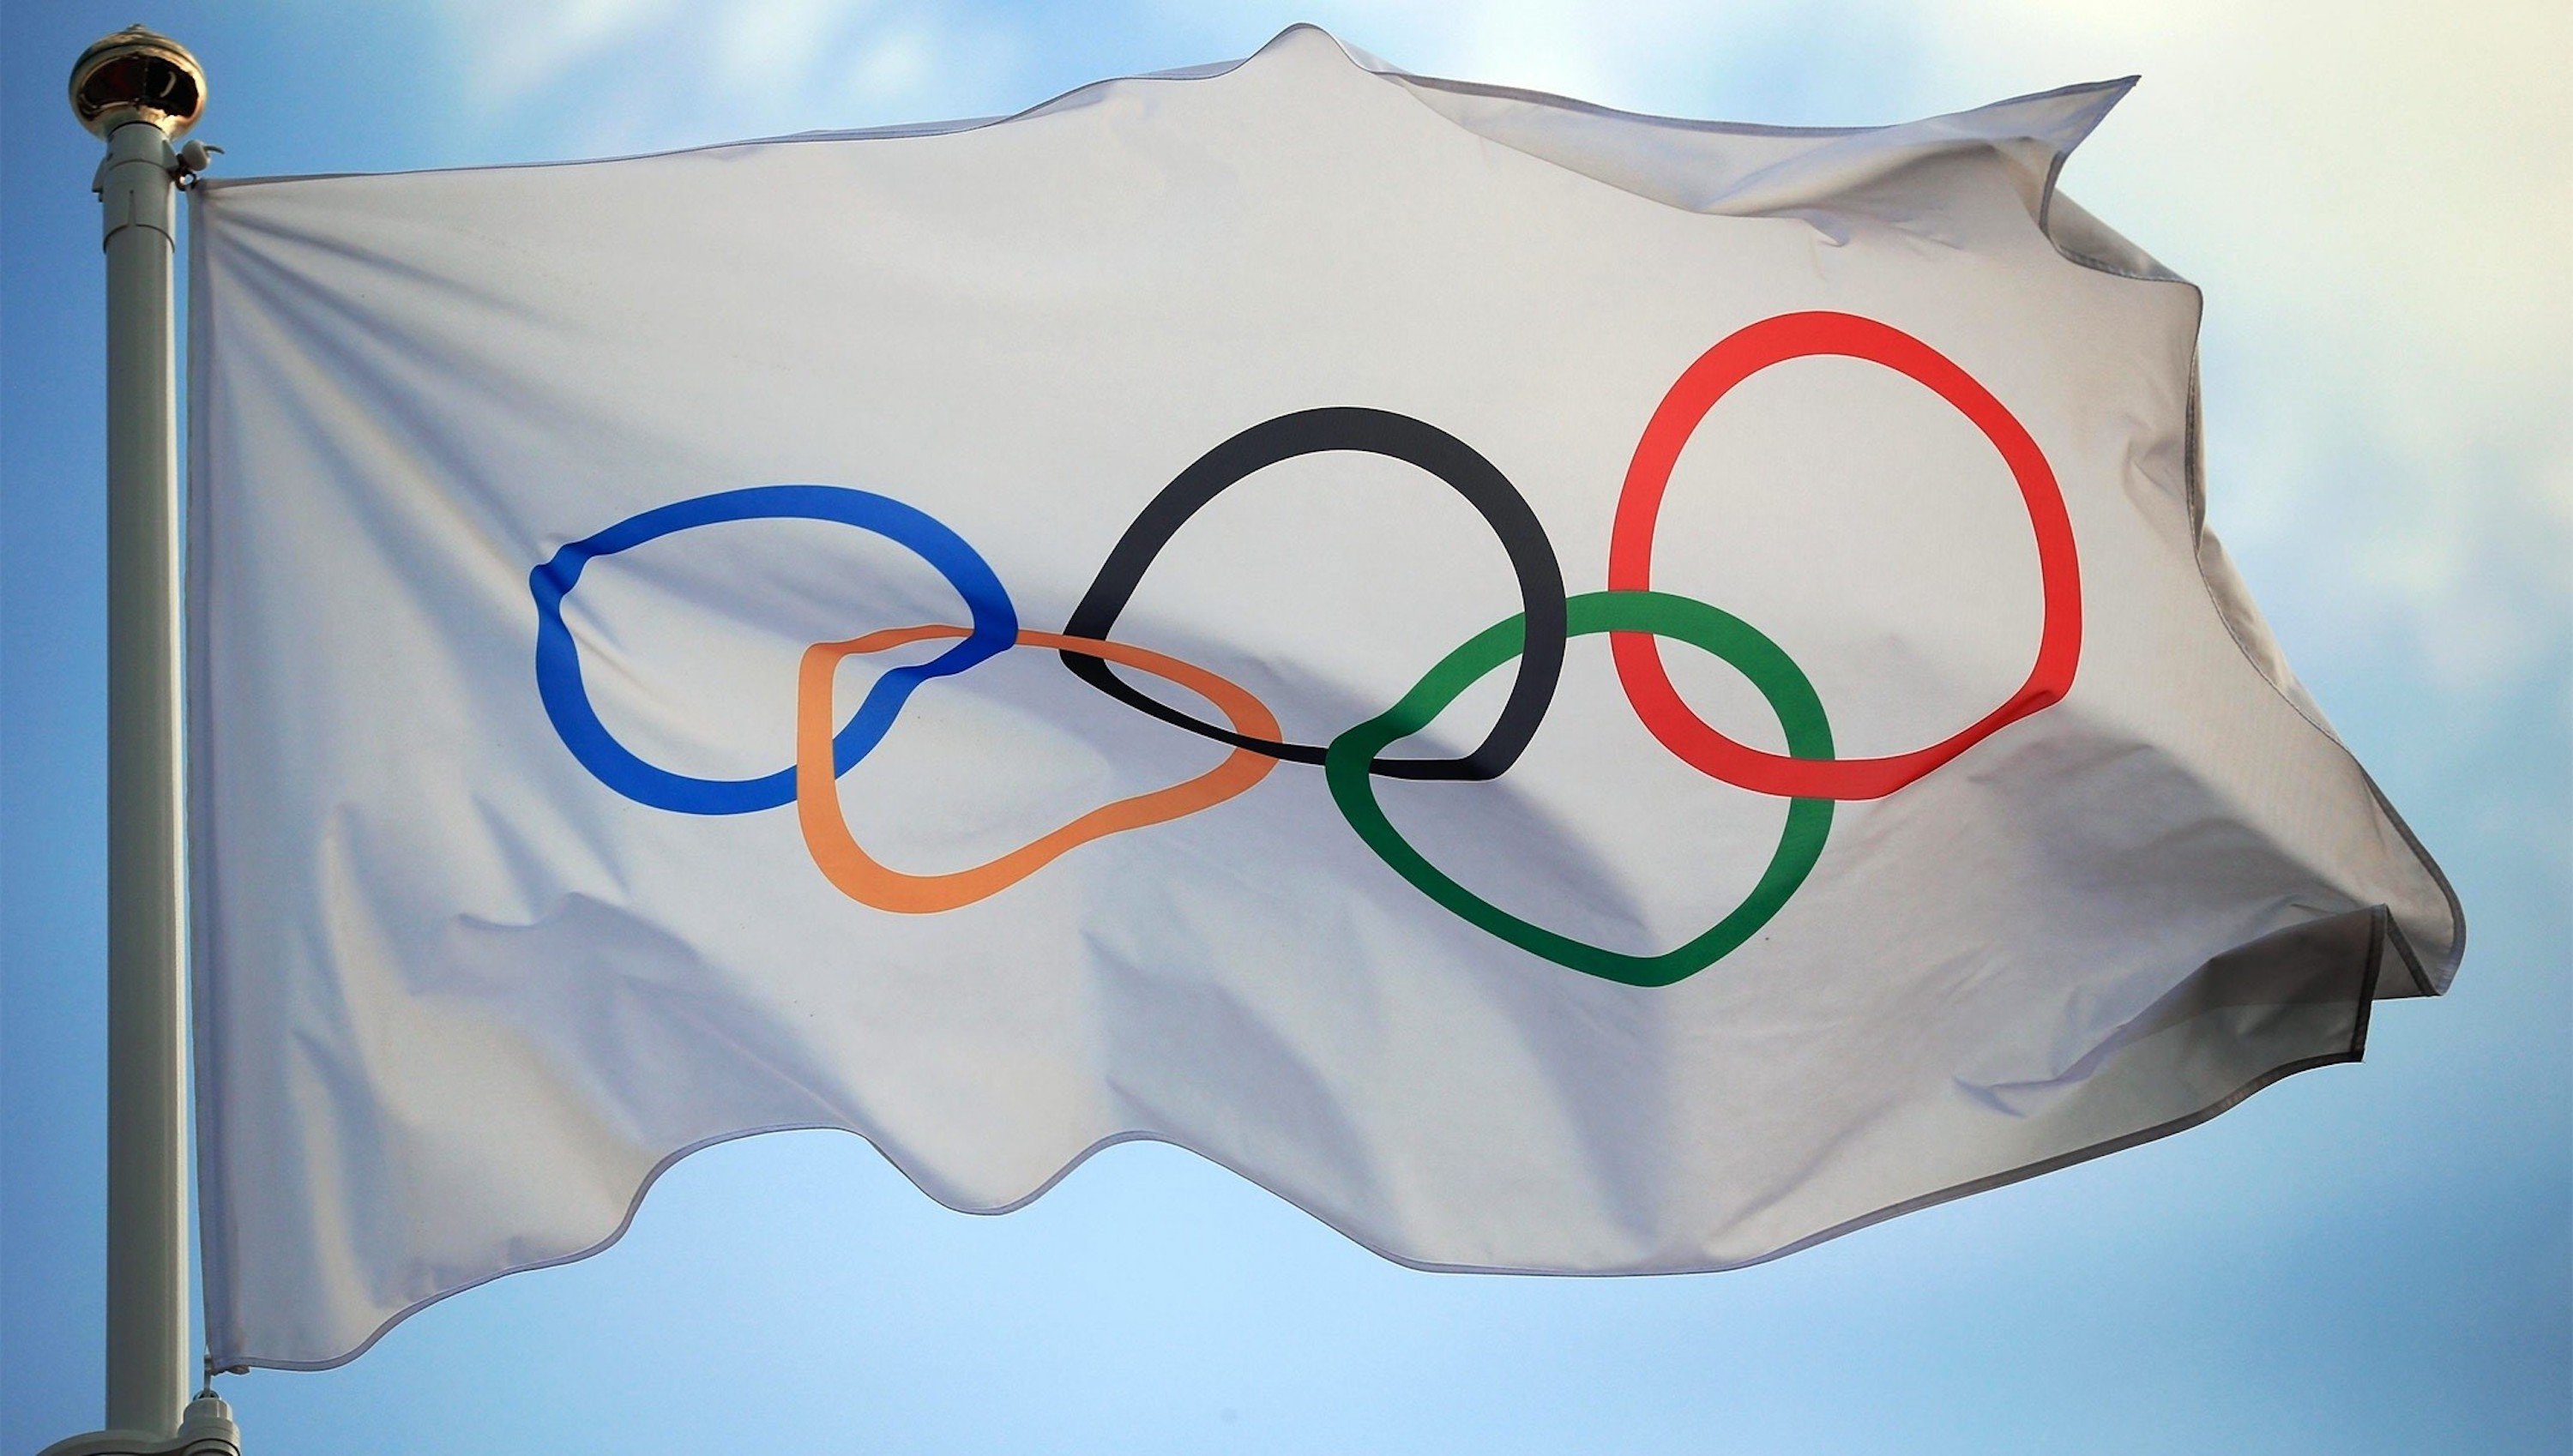 Deportistas y aficionados vacunados por los Juegos Olímpicos, objetivo del COI